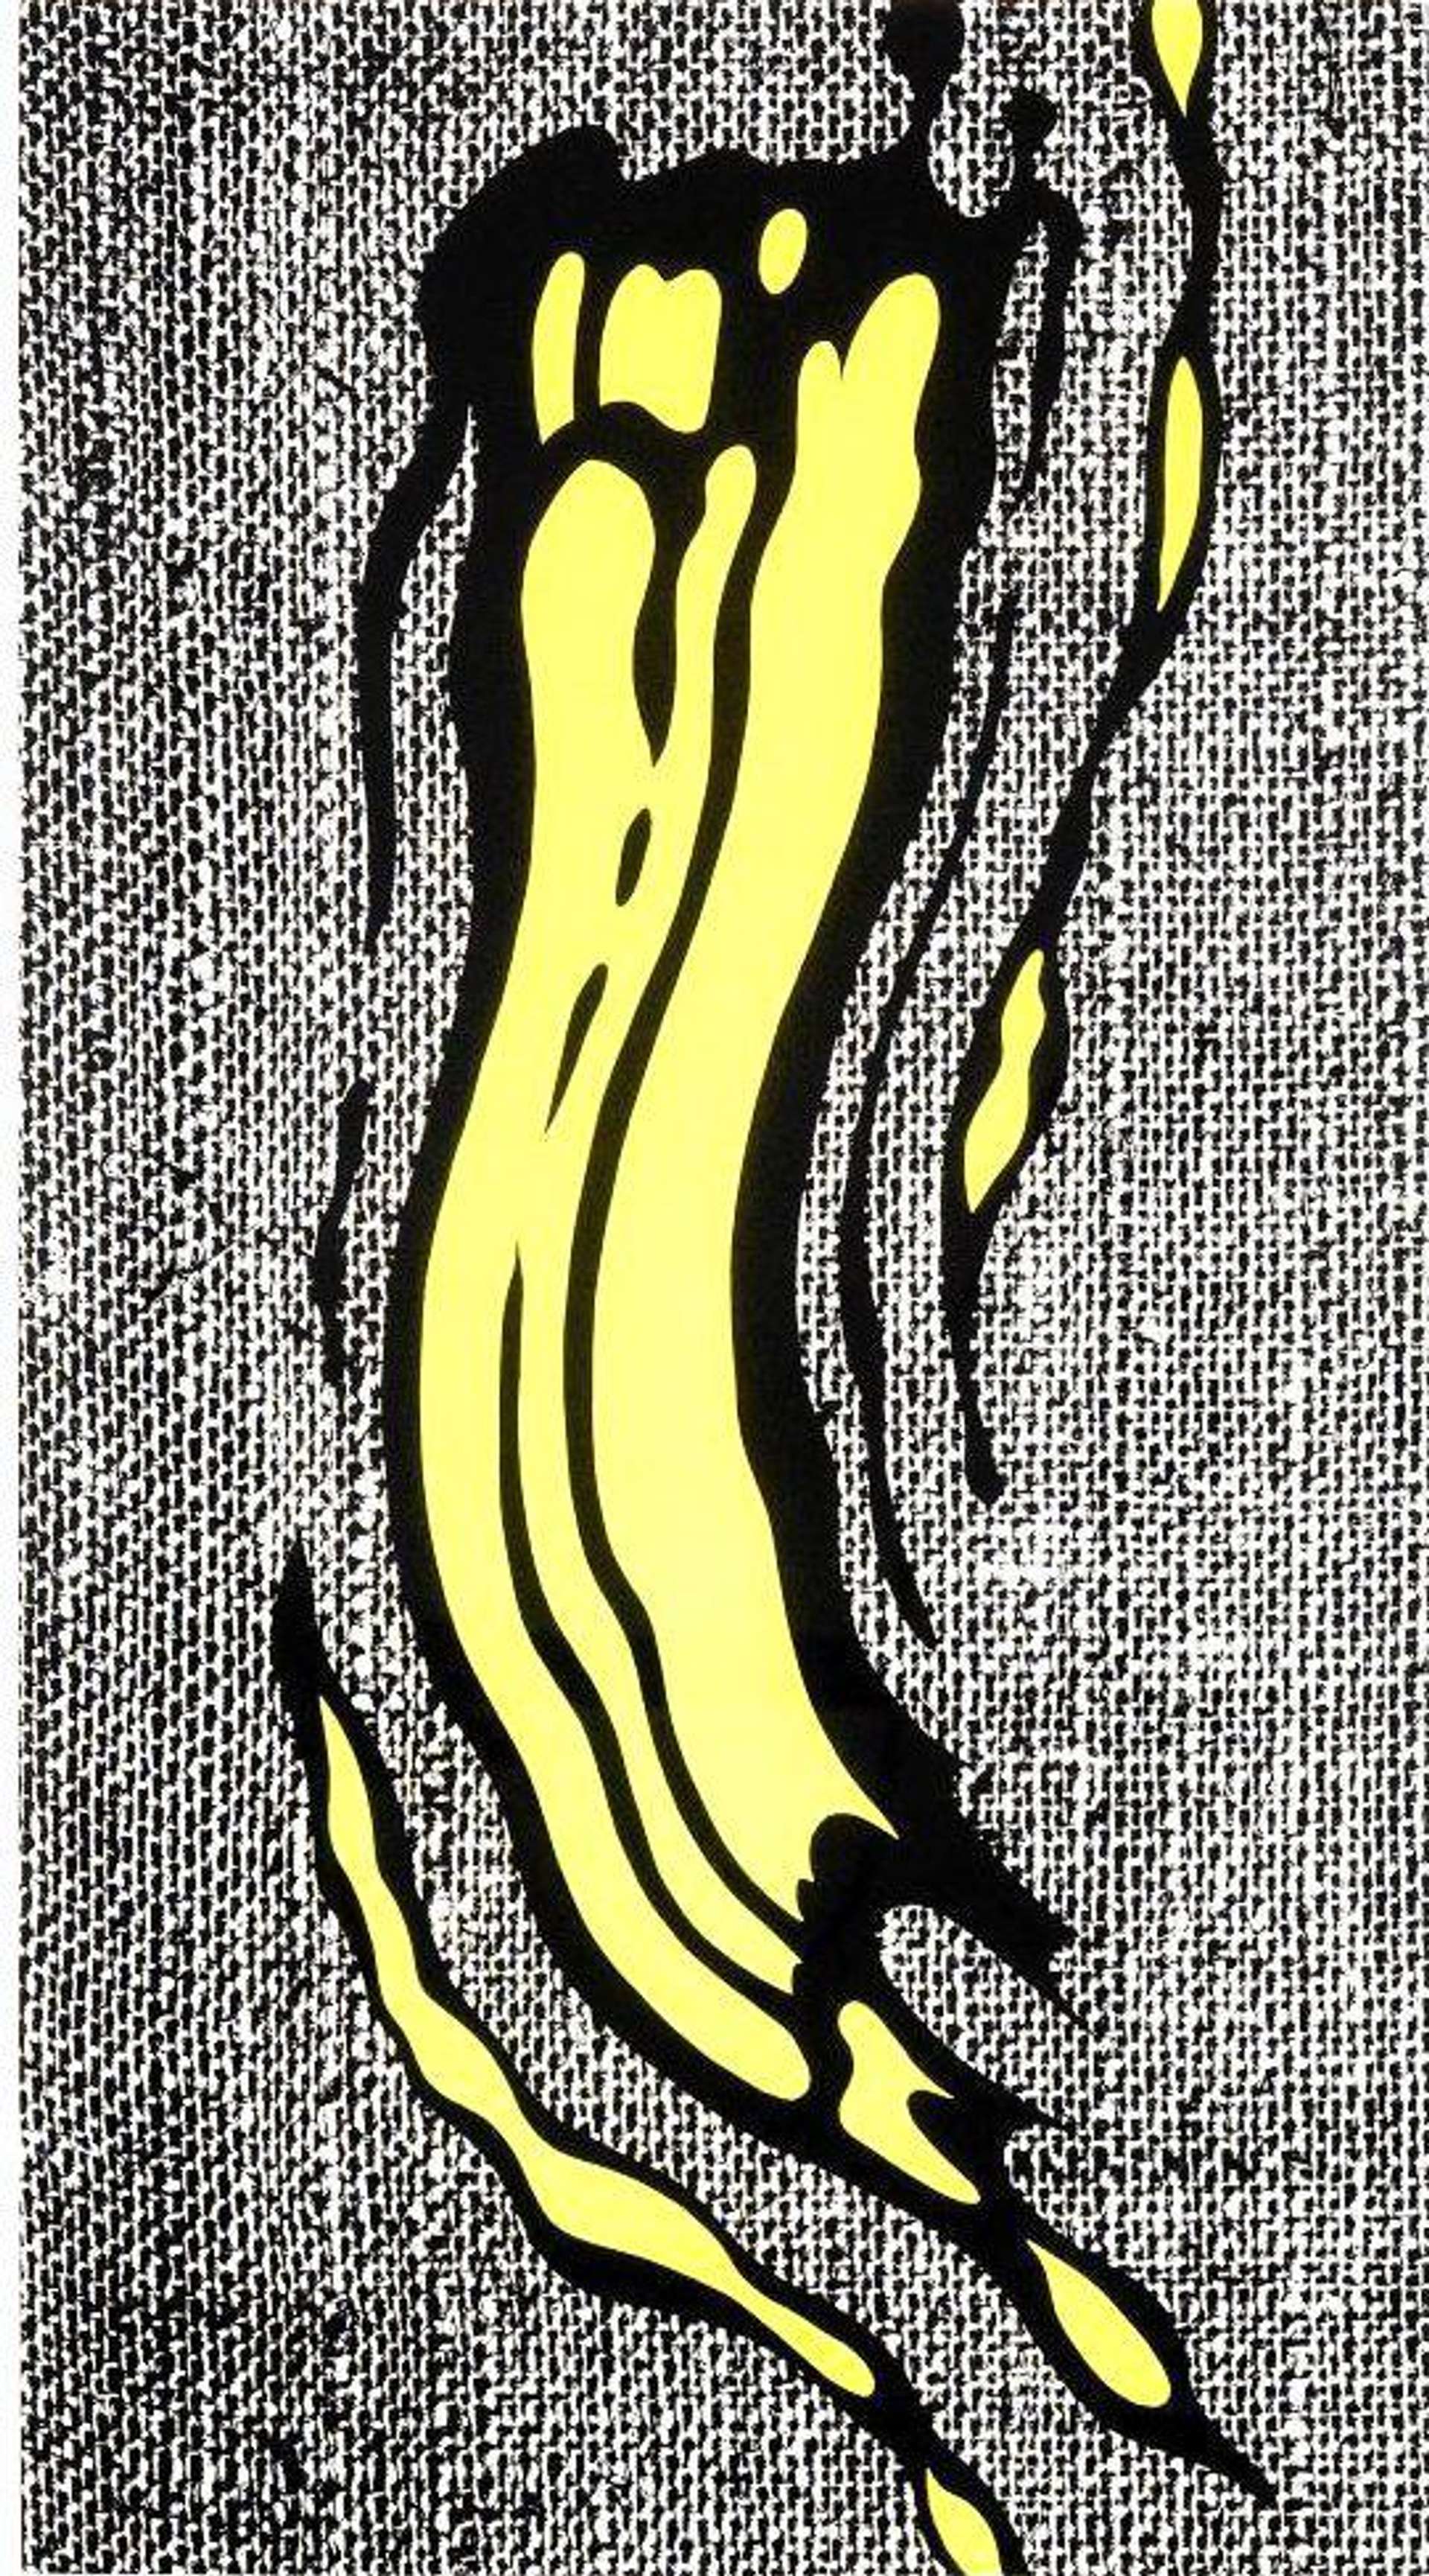 Roy Lichtenstein: Yellow Brushstroke - Signed Print